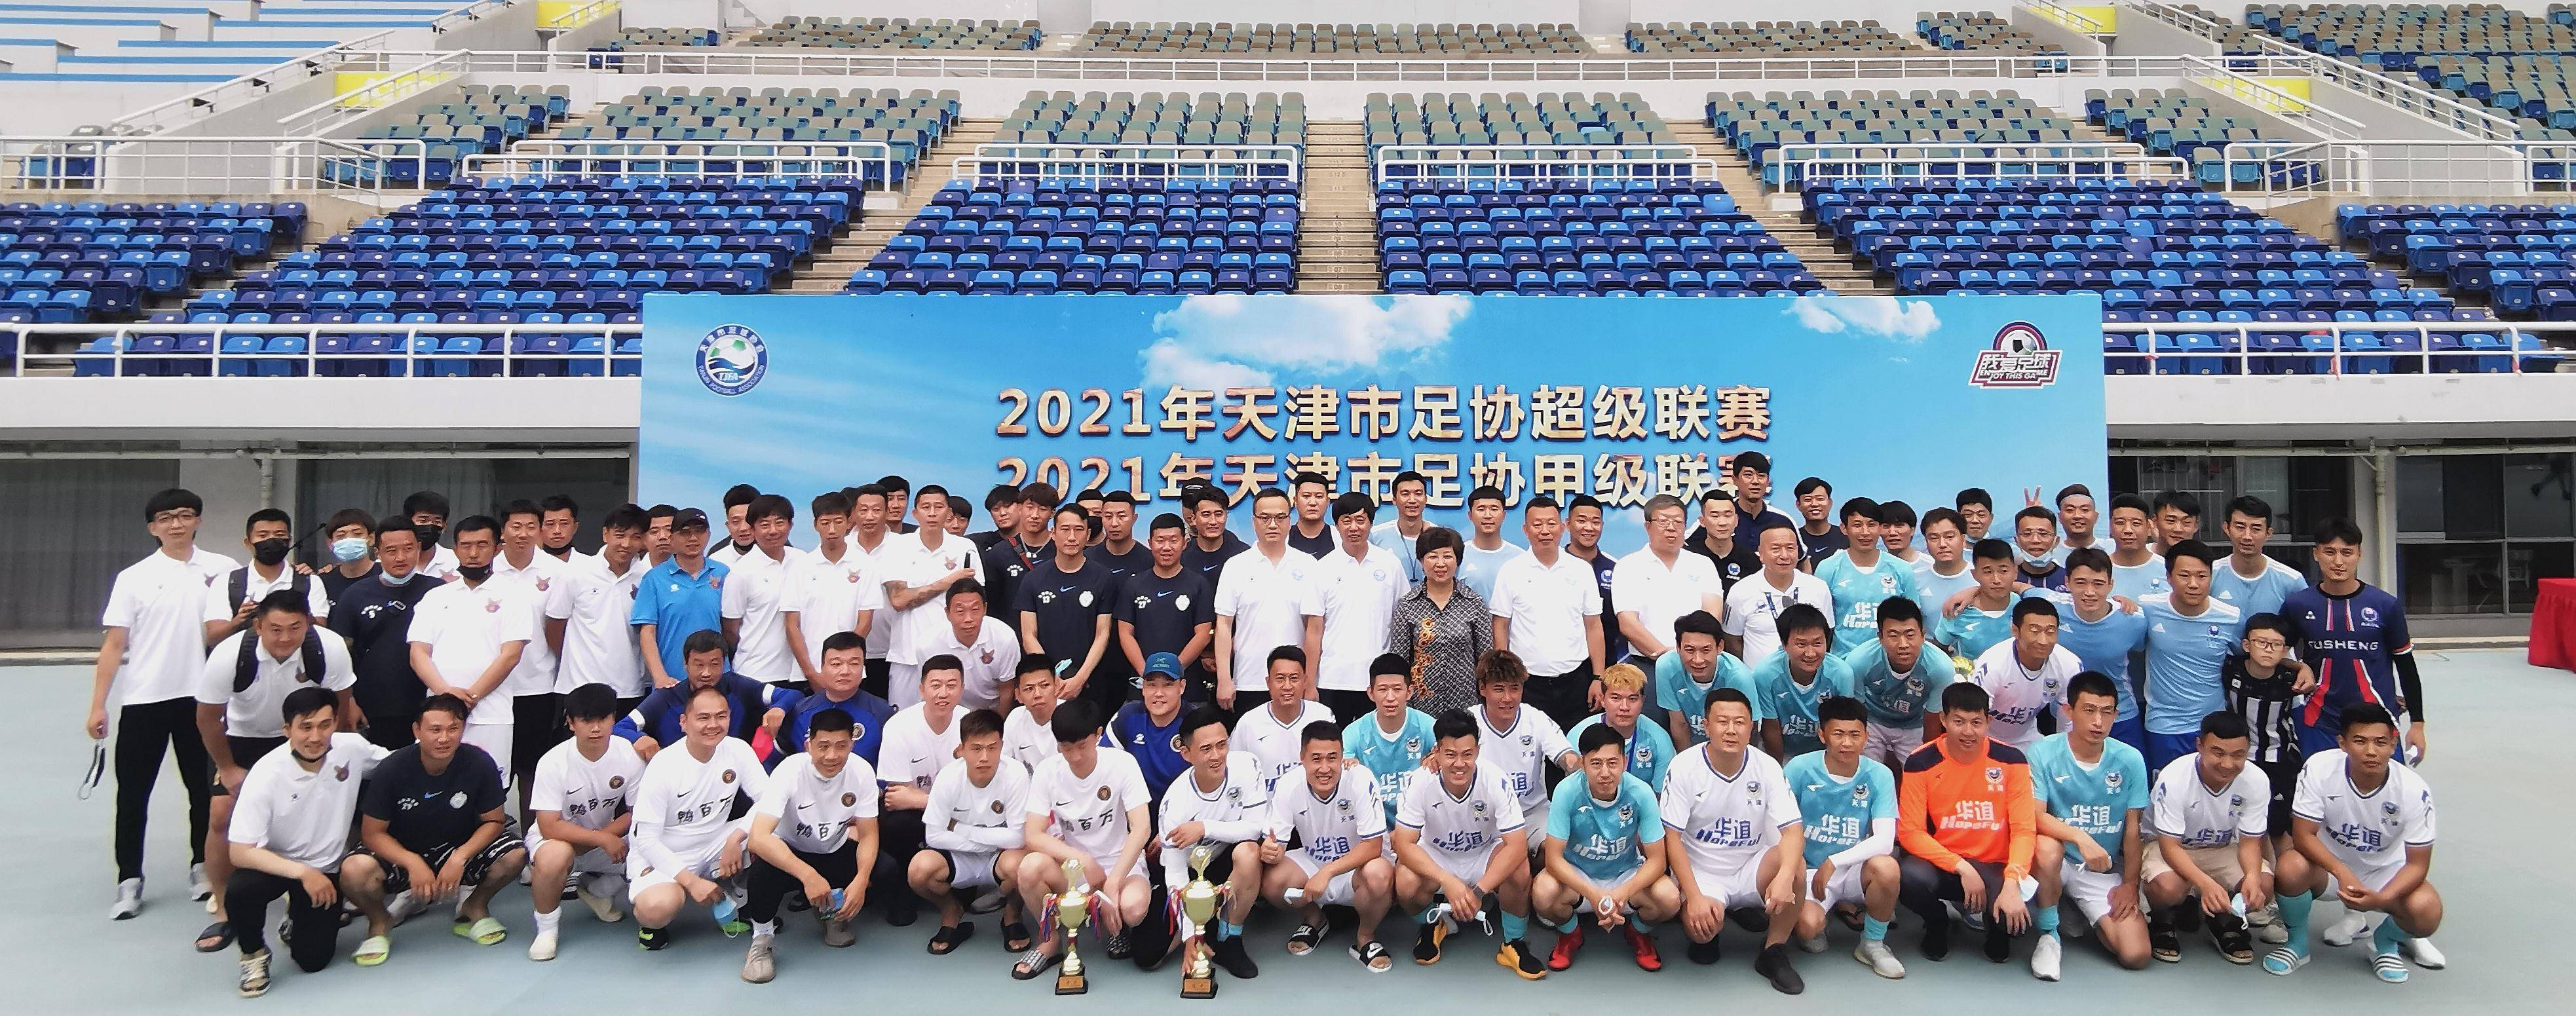 
2022年天津市足协超级联赛规程一、办赛宗旨

